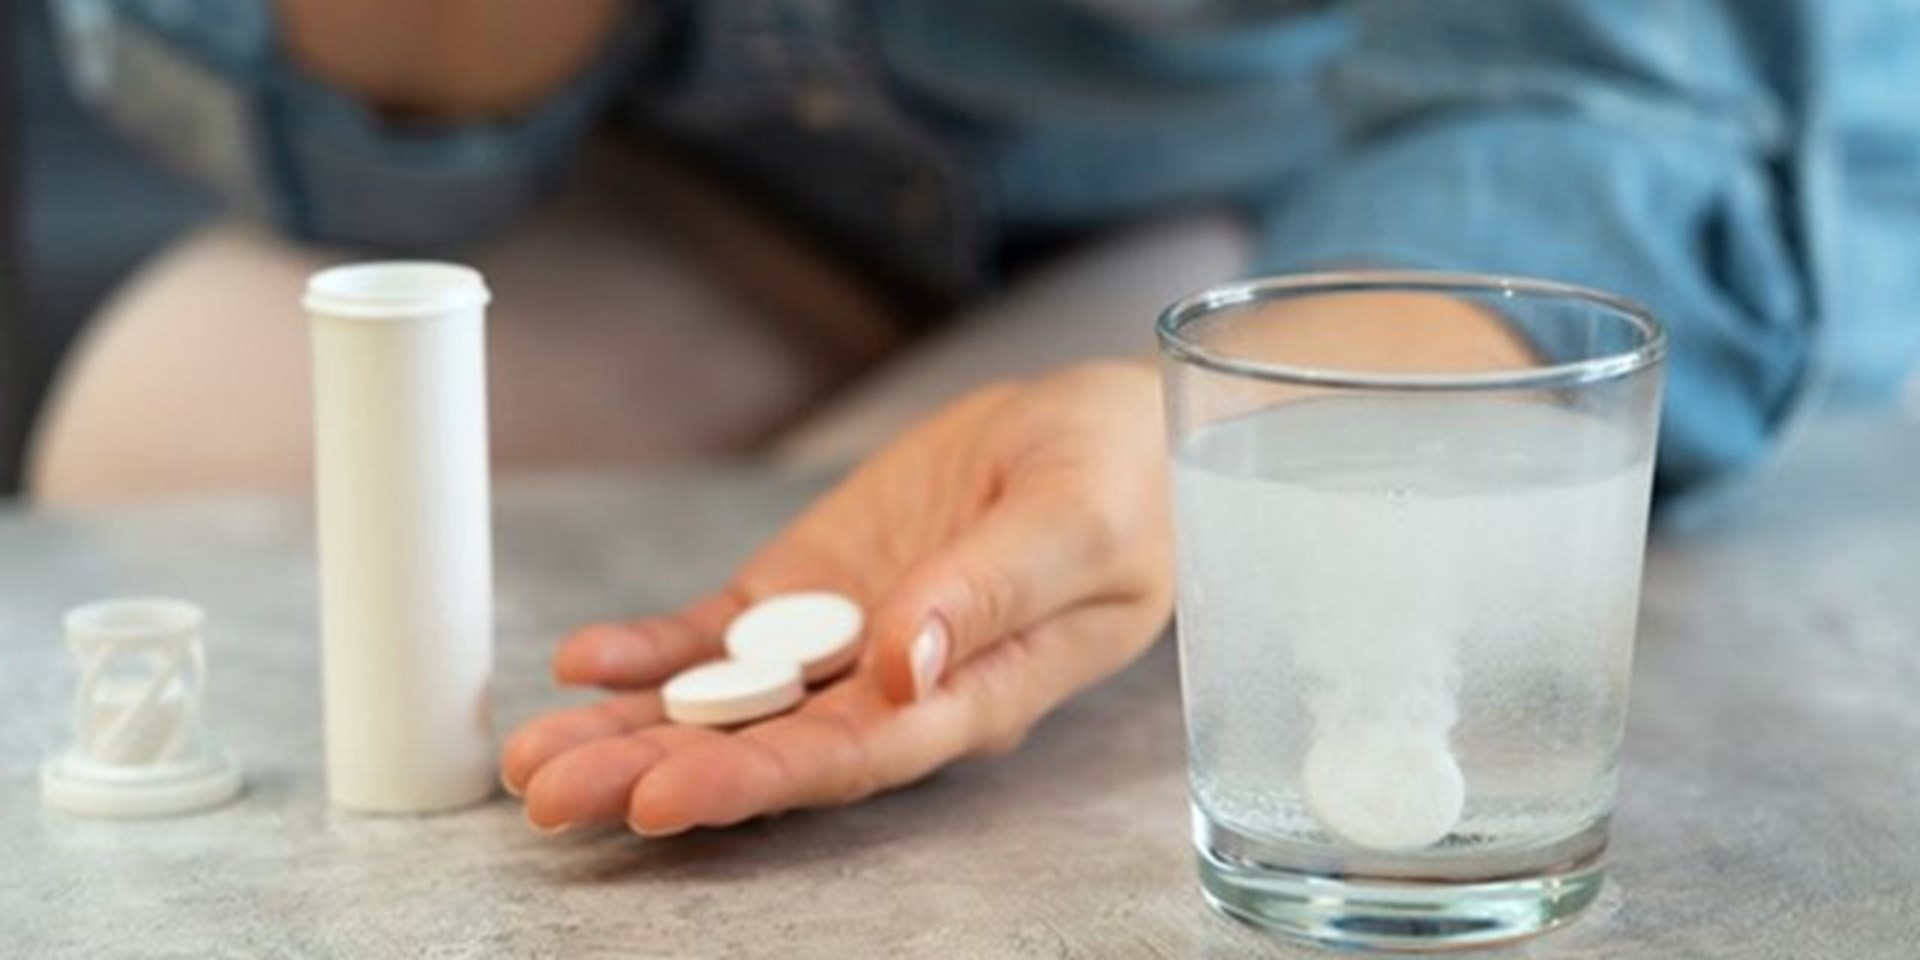 Защищает ли аспирин печень от ожирения? 